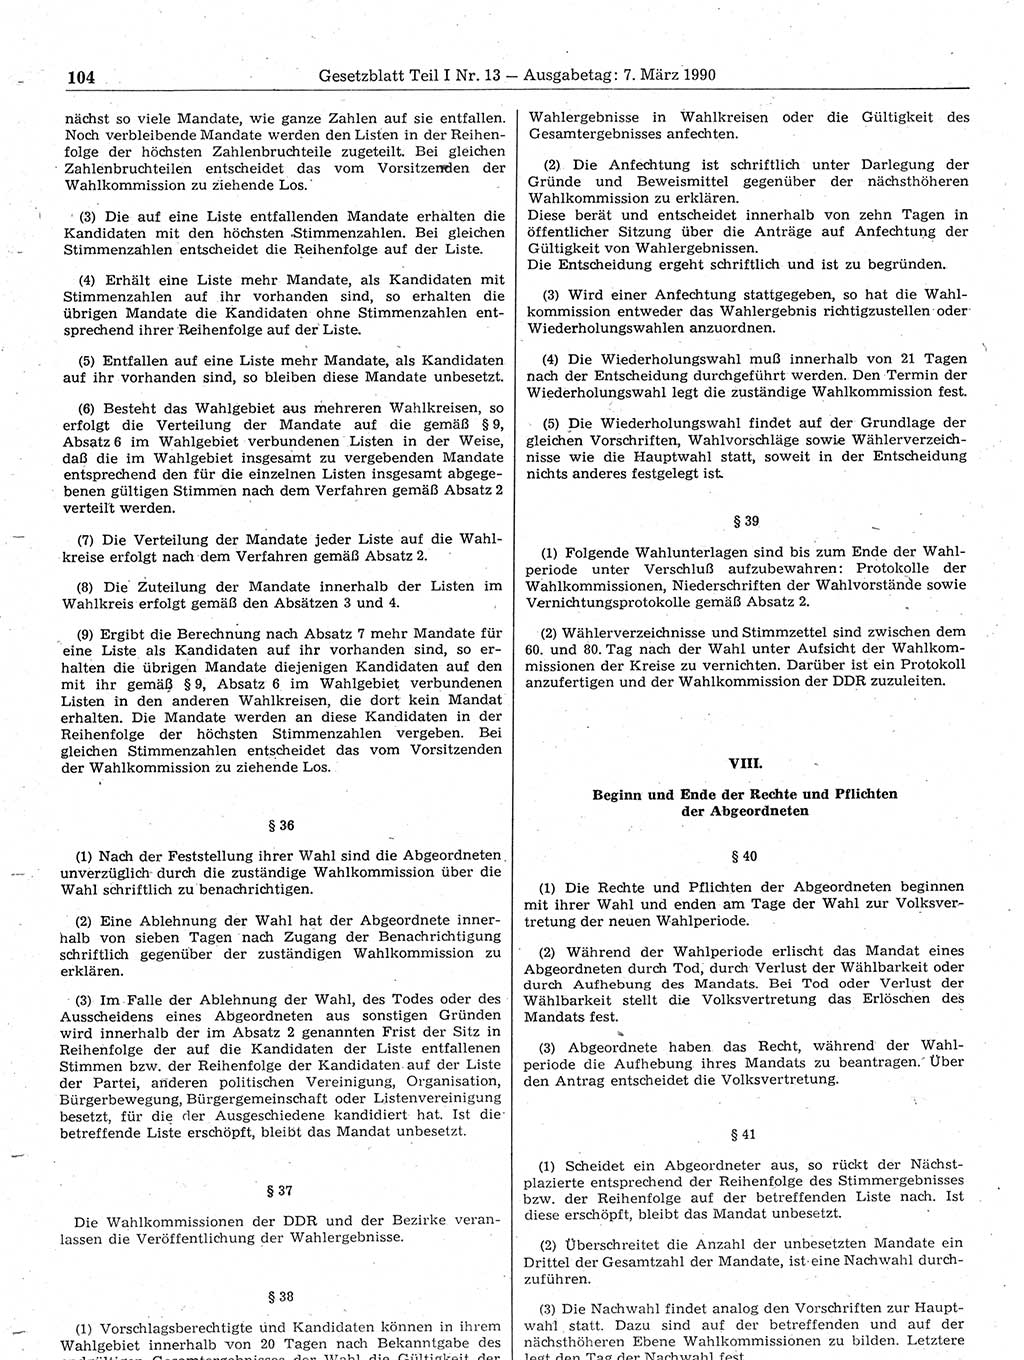 Gesetzblatt (GBl.) der Deutschen Demokratischen Republik (DDR) Teil Ⅰ 1990, Seite 104 (GBl. DDR Ⅰ 1990, S. 104)